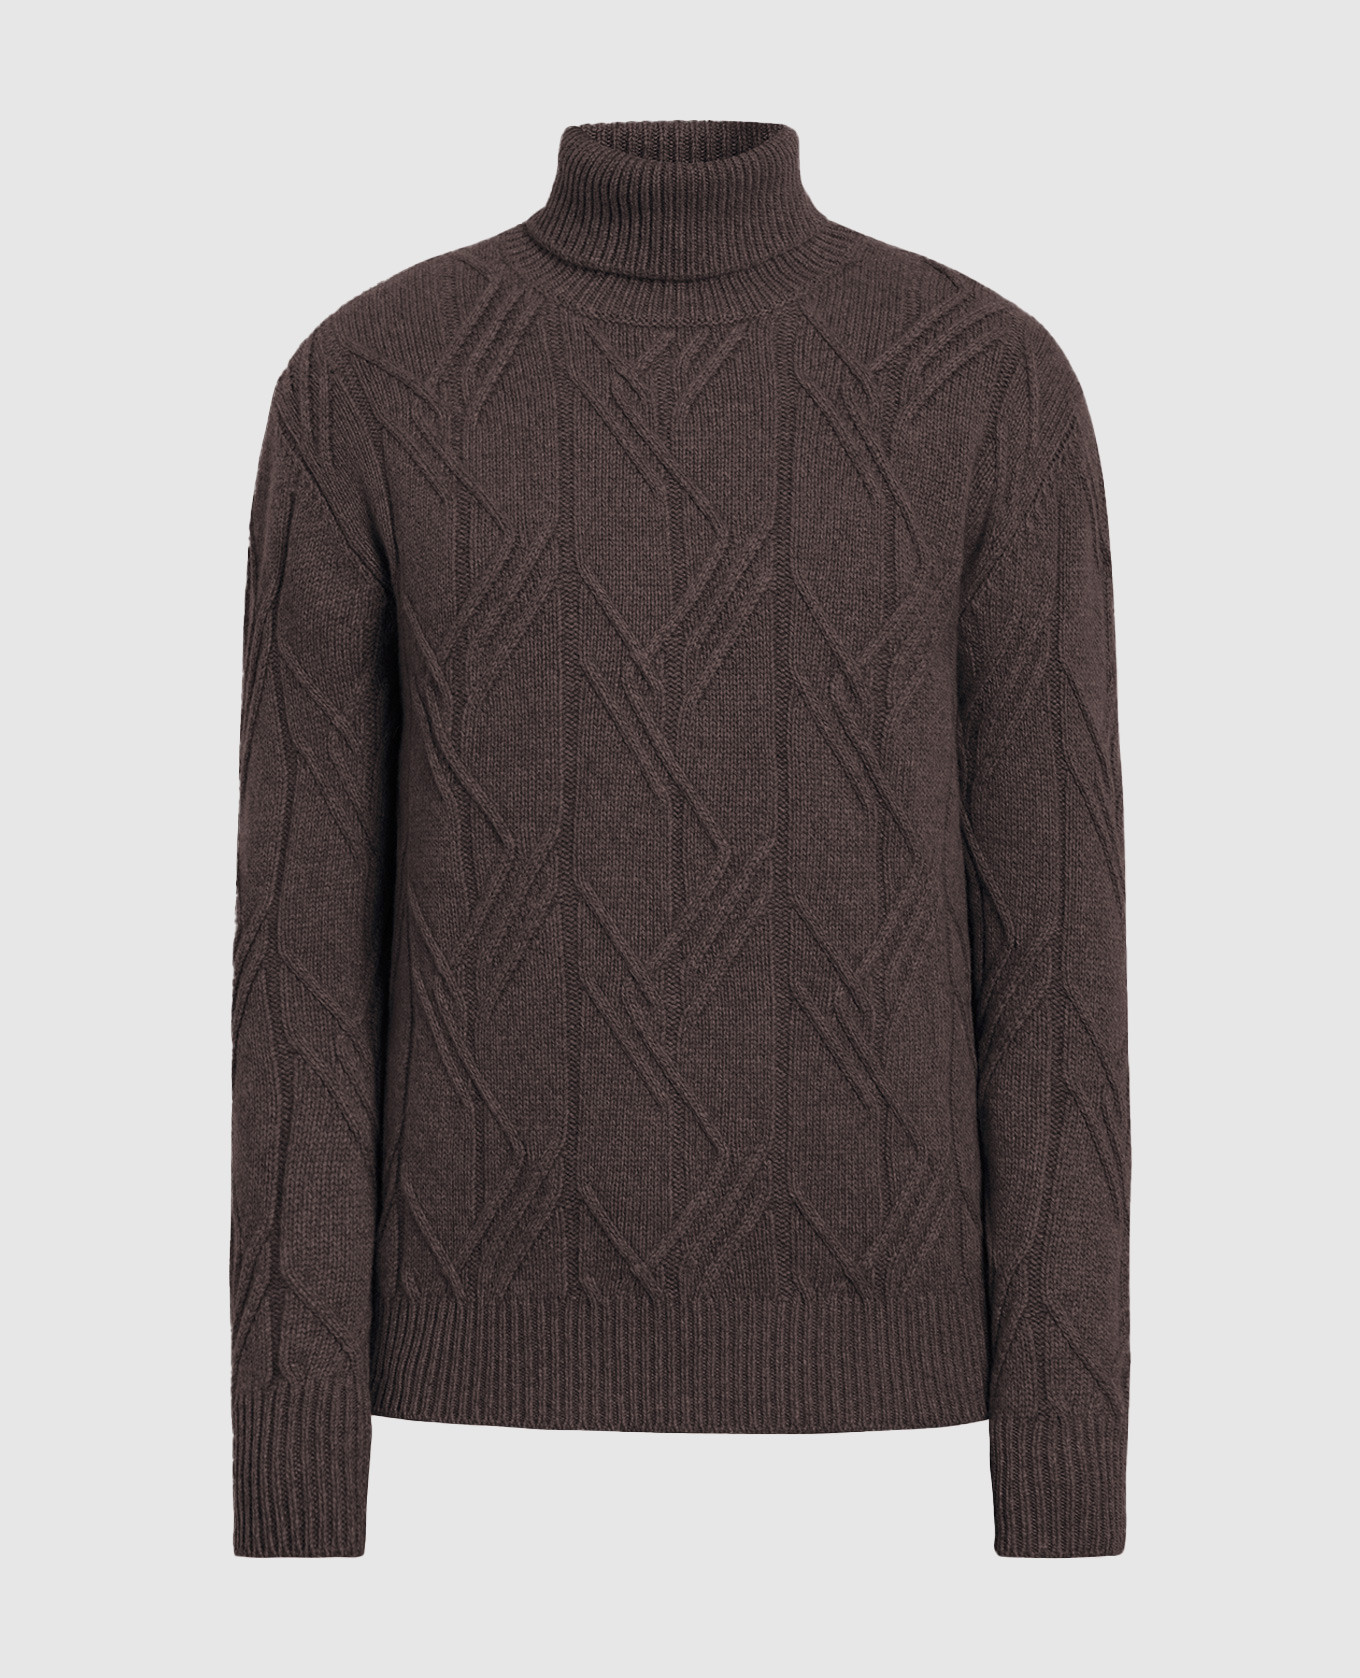 Коричневый свитер из кашемира в фактурный узор.